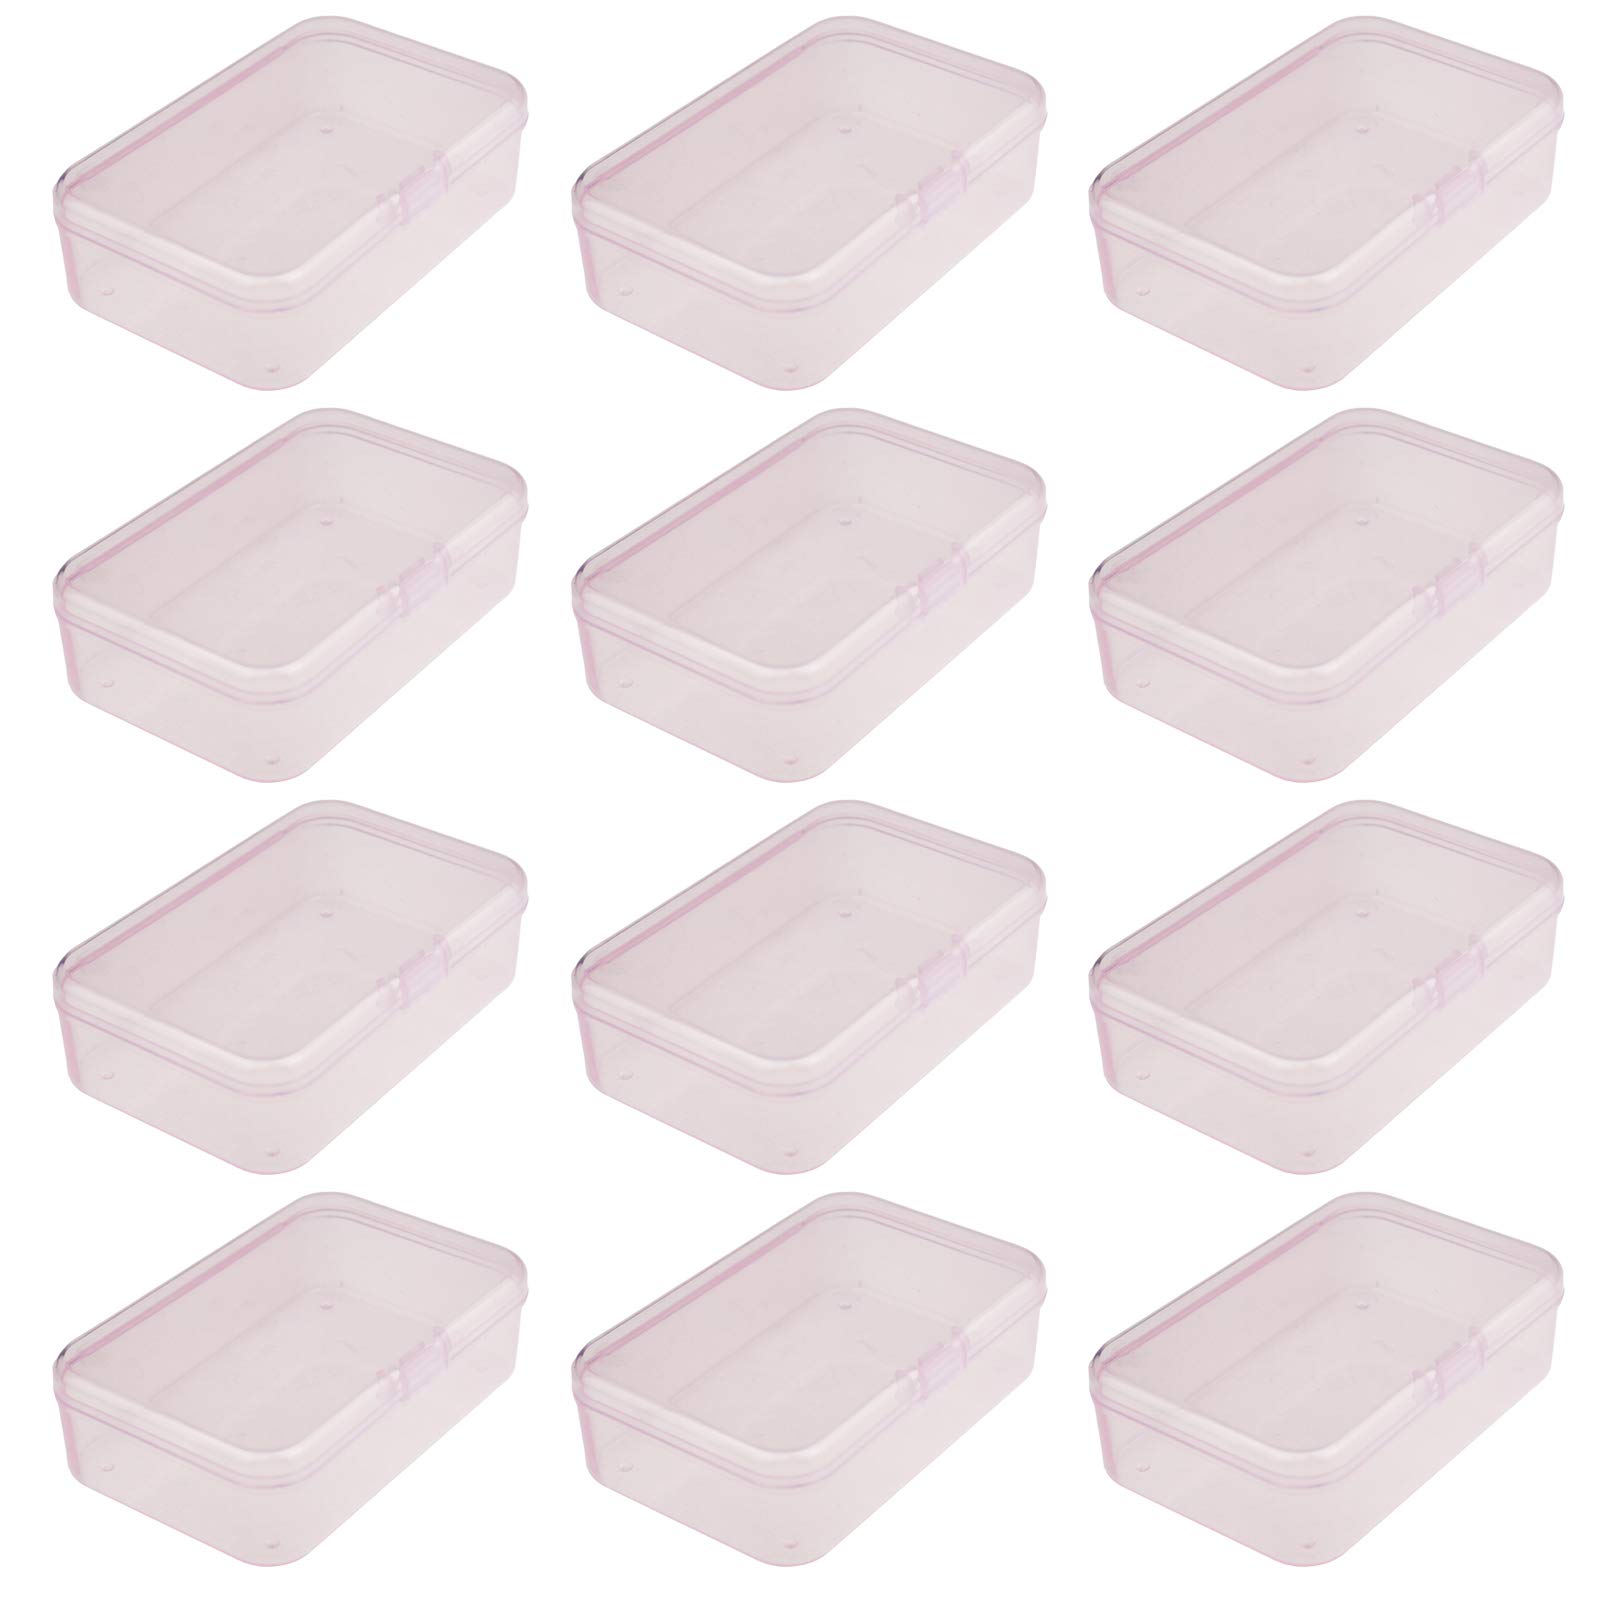 Rectangular Plastic Containers - Rectangular Plastic Container